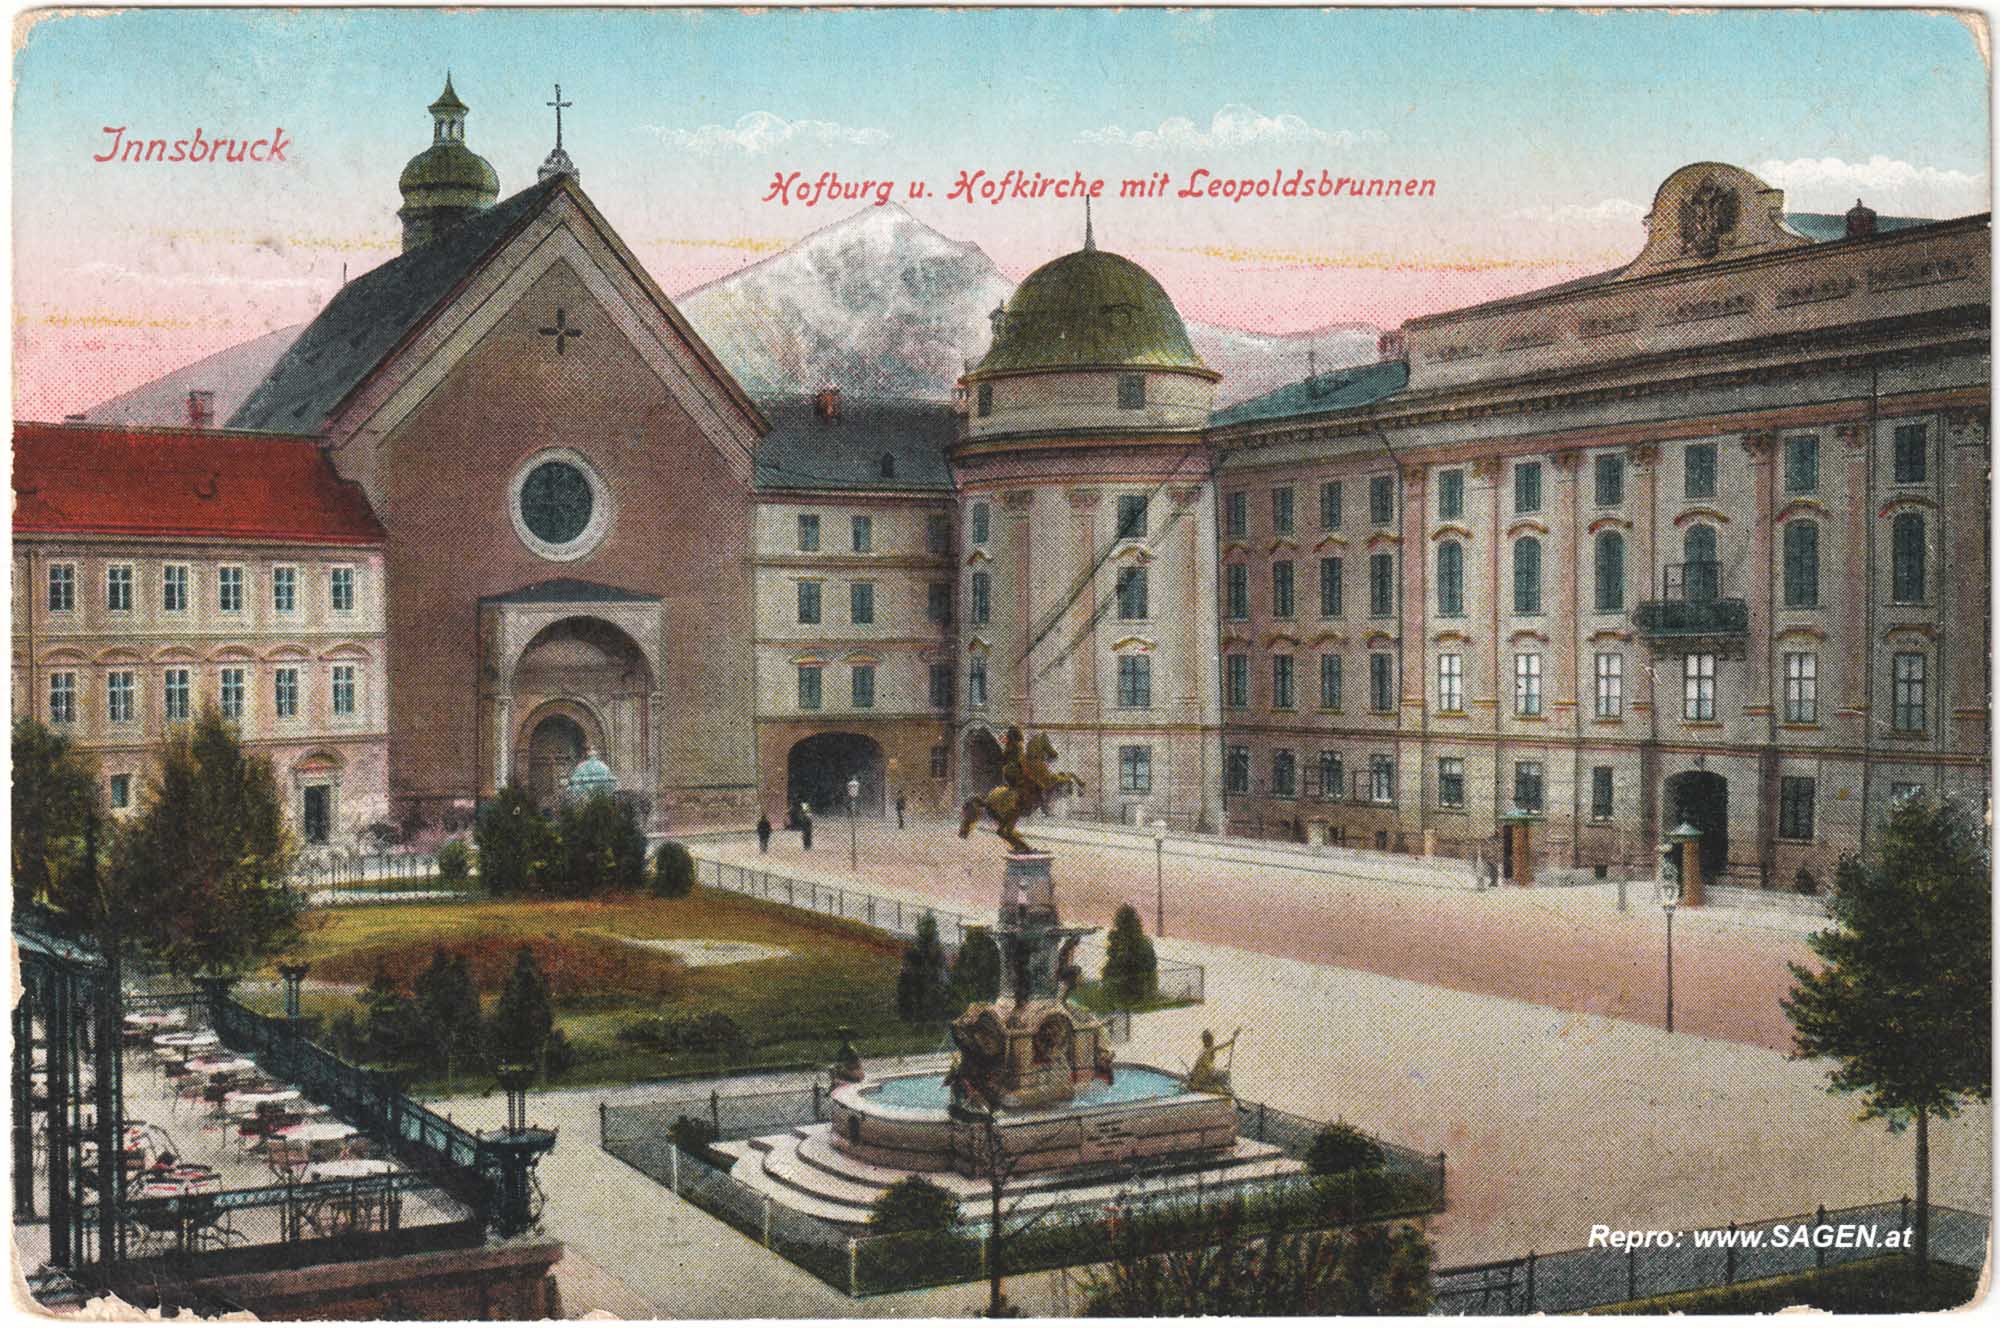 Innsbruck, Hofburg und Hofkirche mit Leopoldsbrunnen